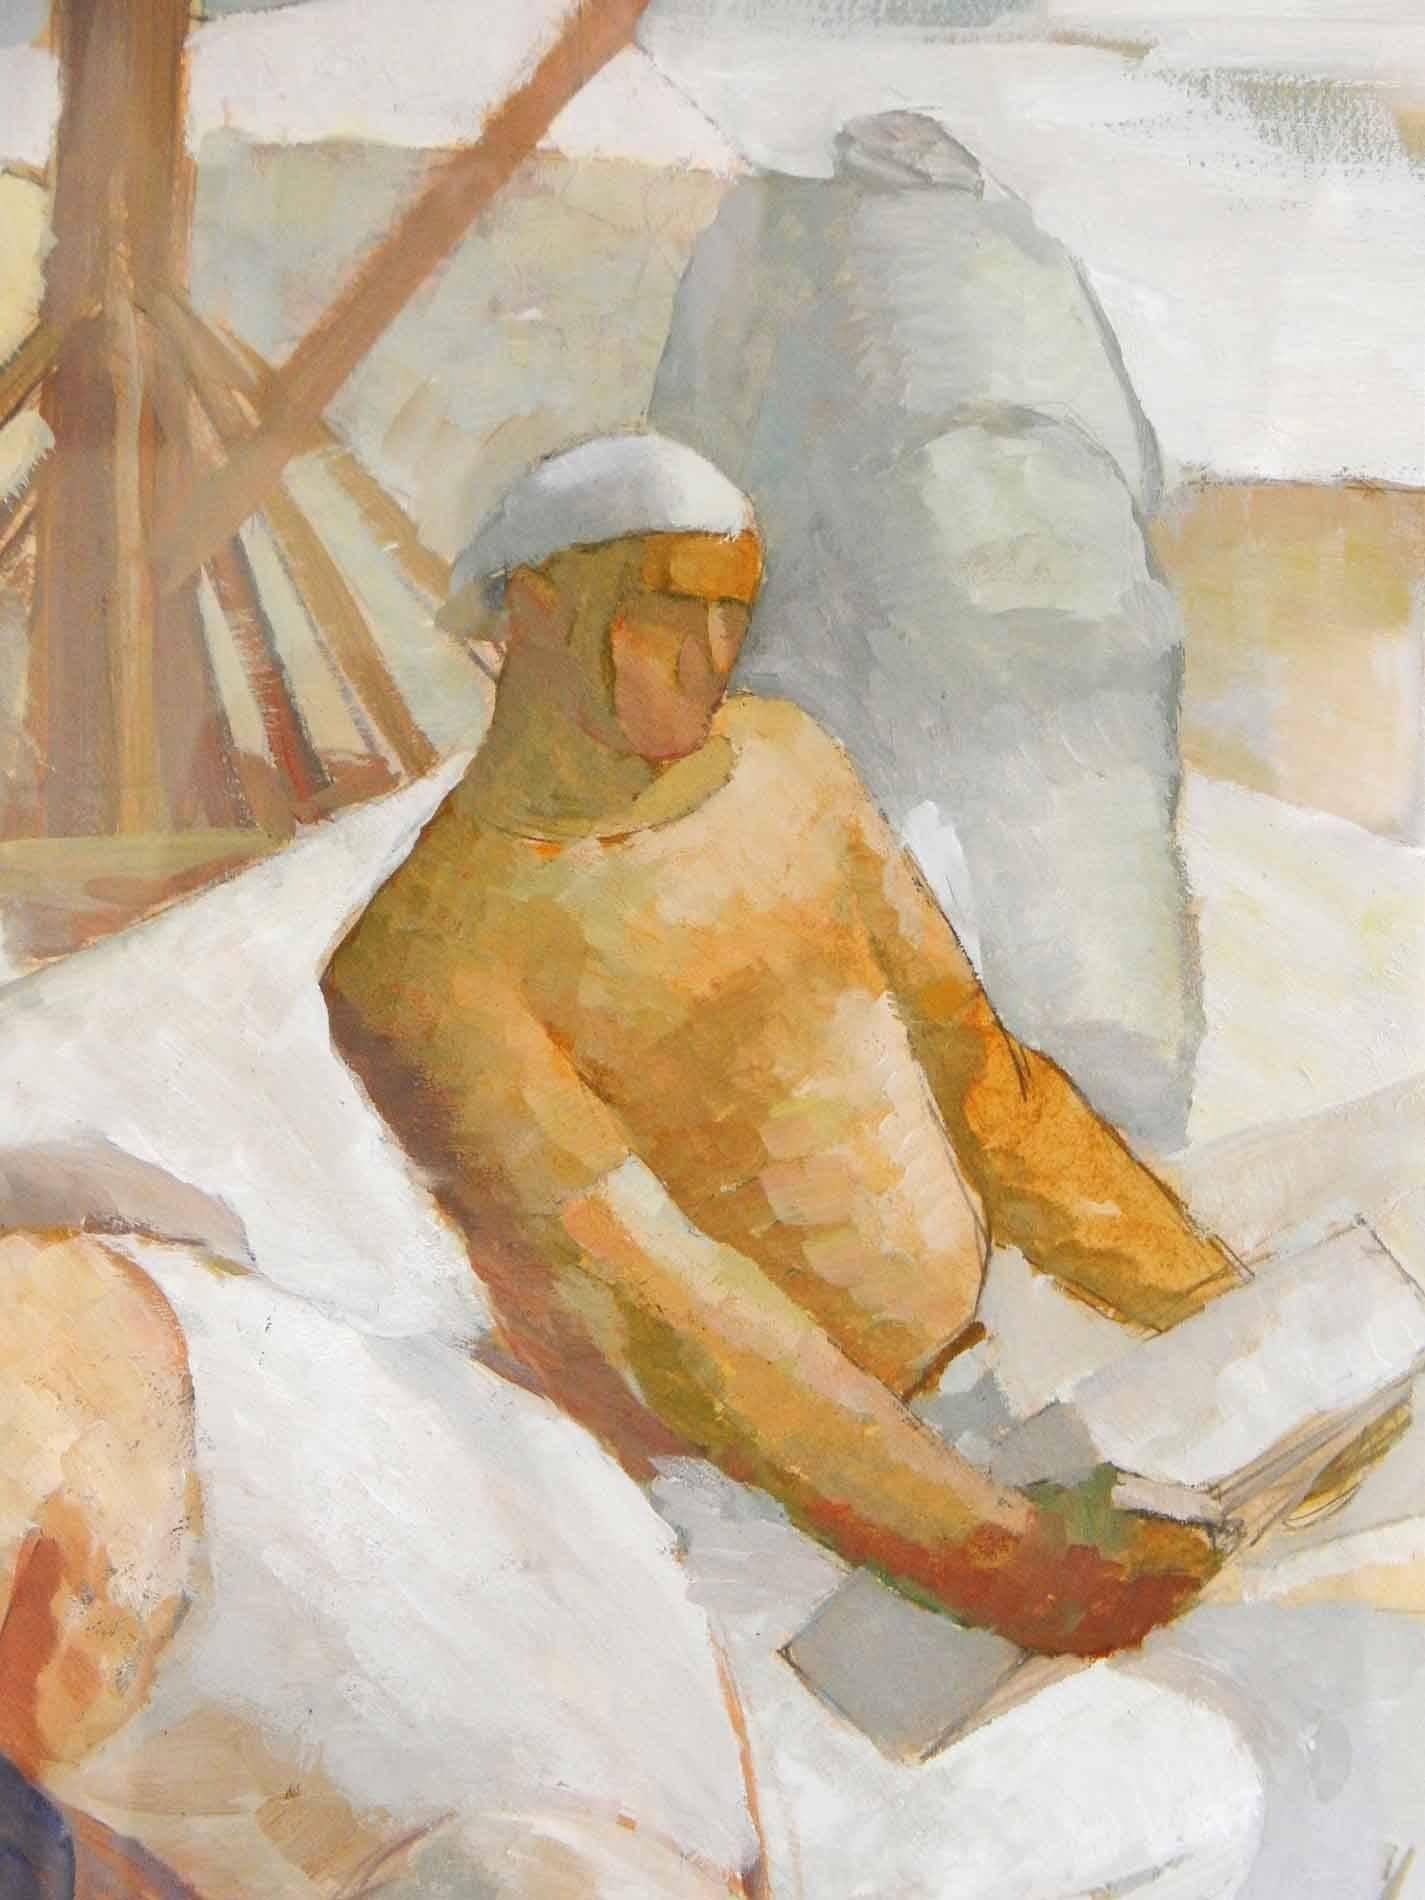 Le peintre Iver Rose est surtout connu pour son travail qui a attiré l'attention sur la situation critique des travailleurs dans l'Amérique de la Dépression. Cette peinture de travailleurs de carrières à Rockport, dans le Massachusetts, en est un